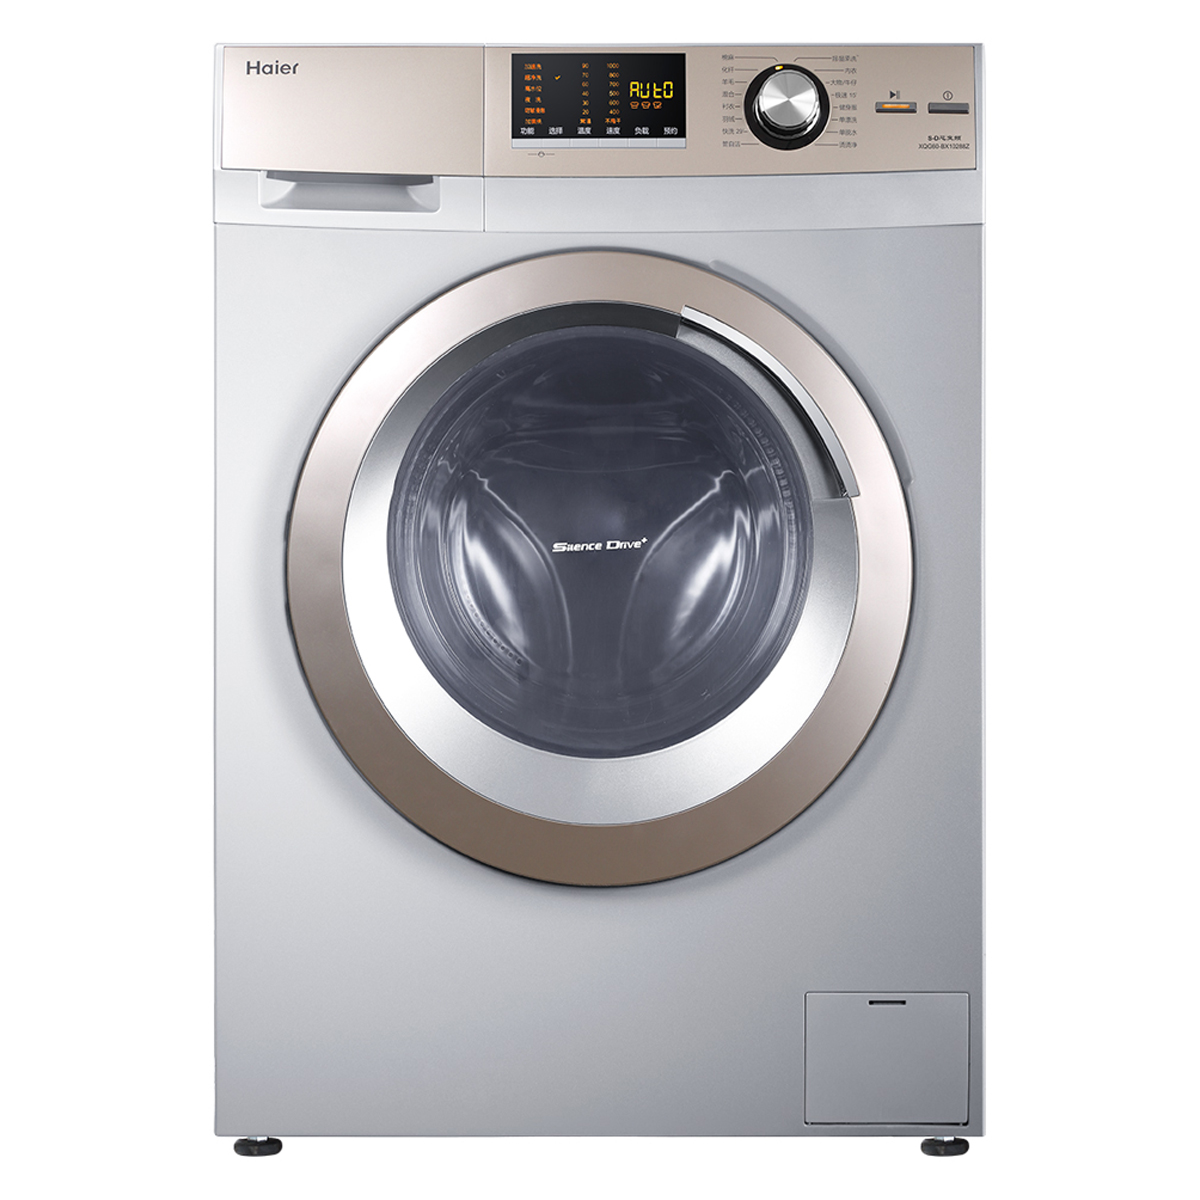 2019年洗衣机品牌排行_海信 hisense XQG70 X1001S 7公斤 滚筒式洗衣机 白色_排行榜